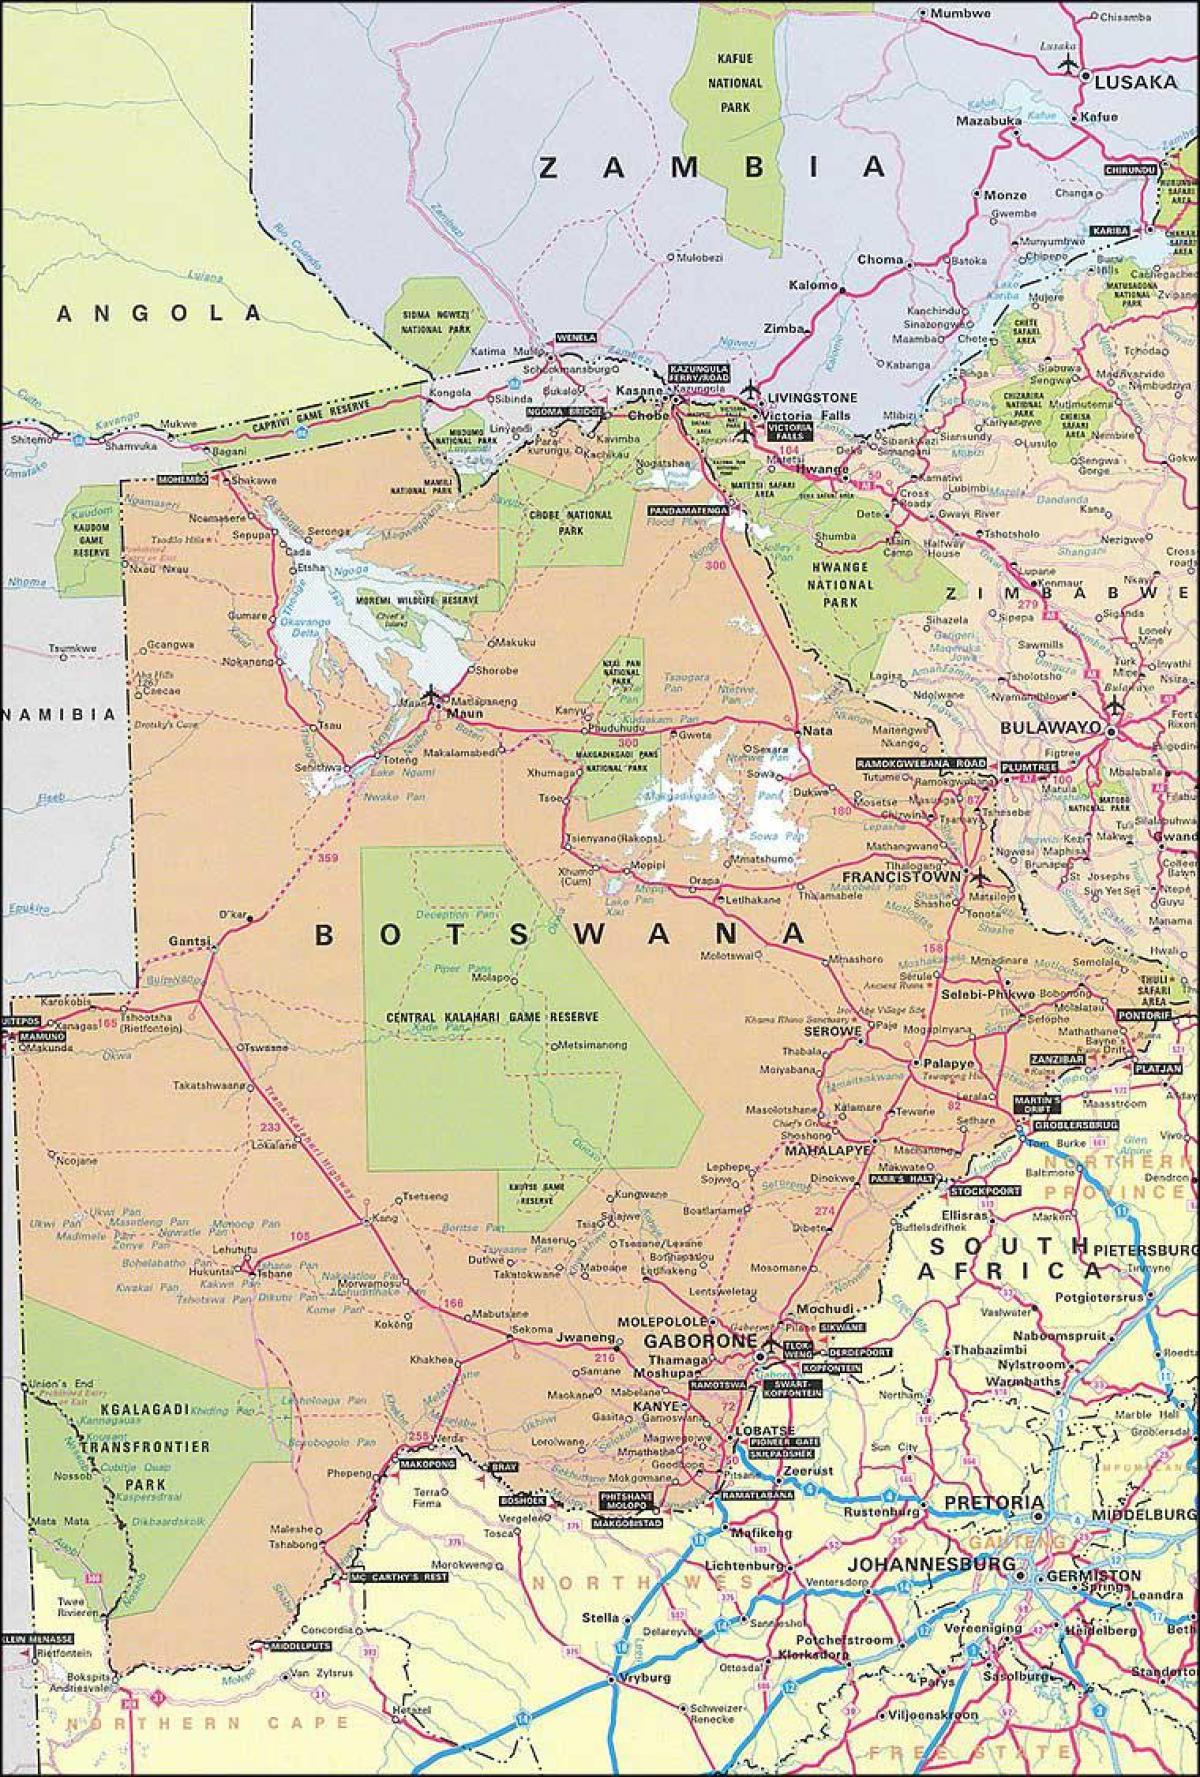 the map of Botswana